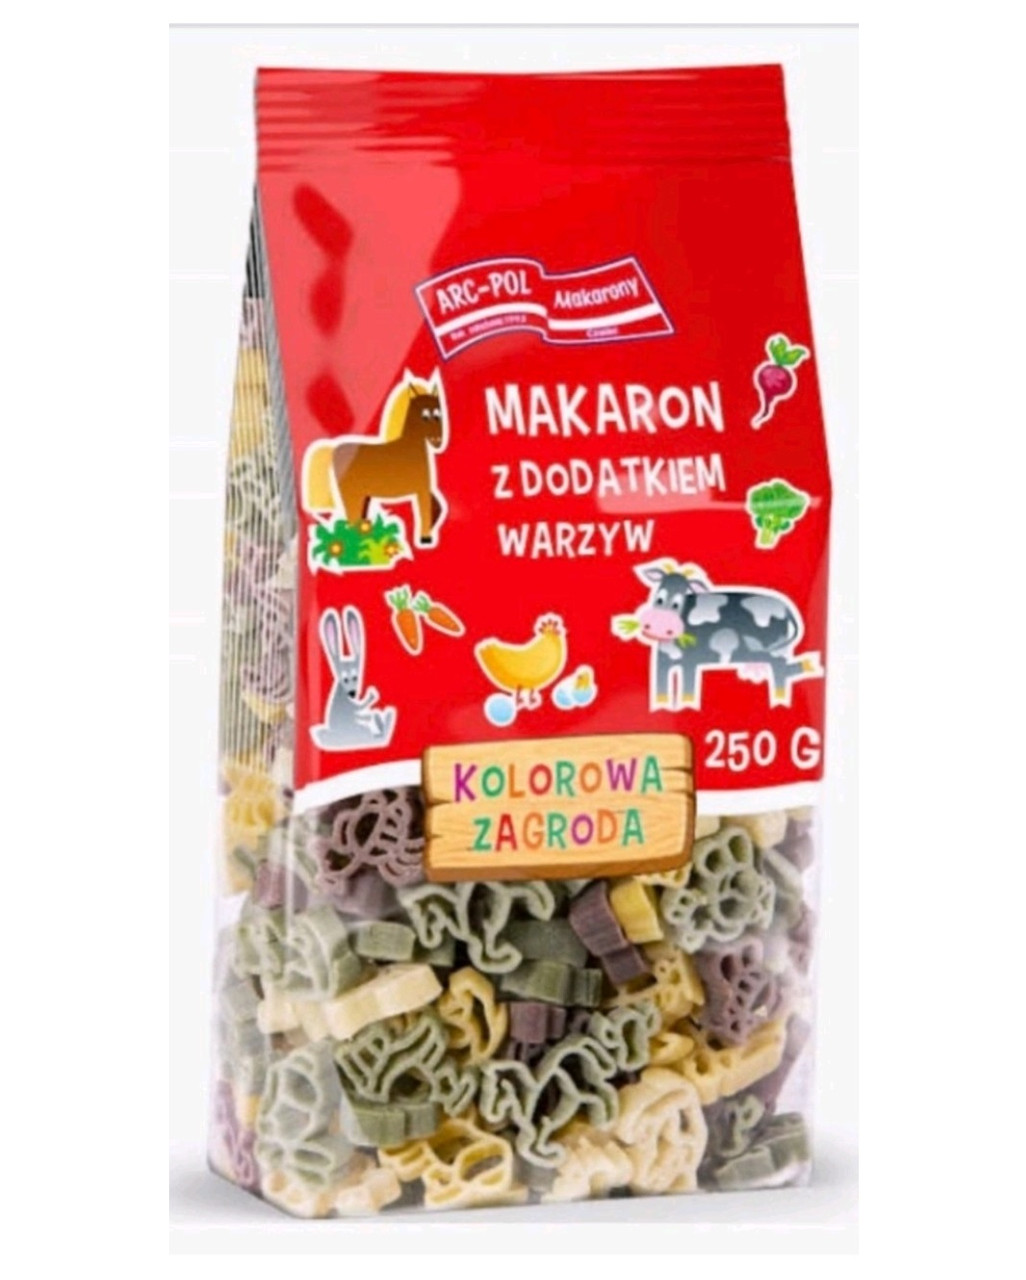 Макарони Кольорові Дитячі Arc-Pol Makarony Kolorowe Zagroda з додаванням овочів 250 г Польща